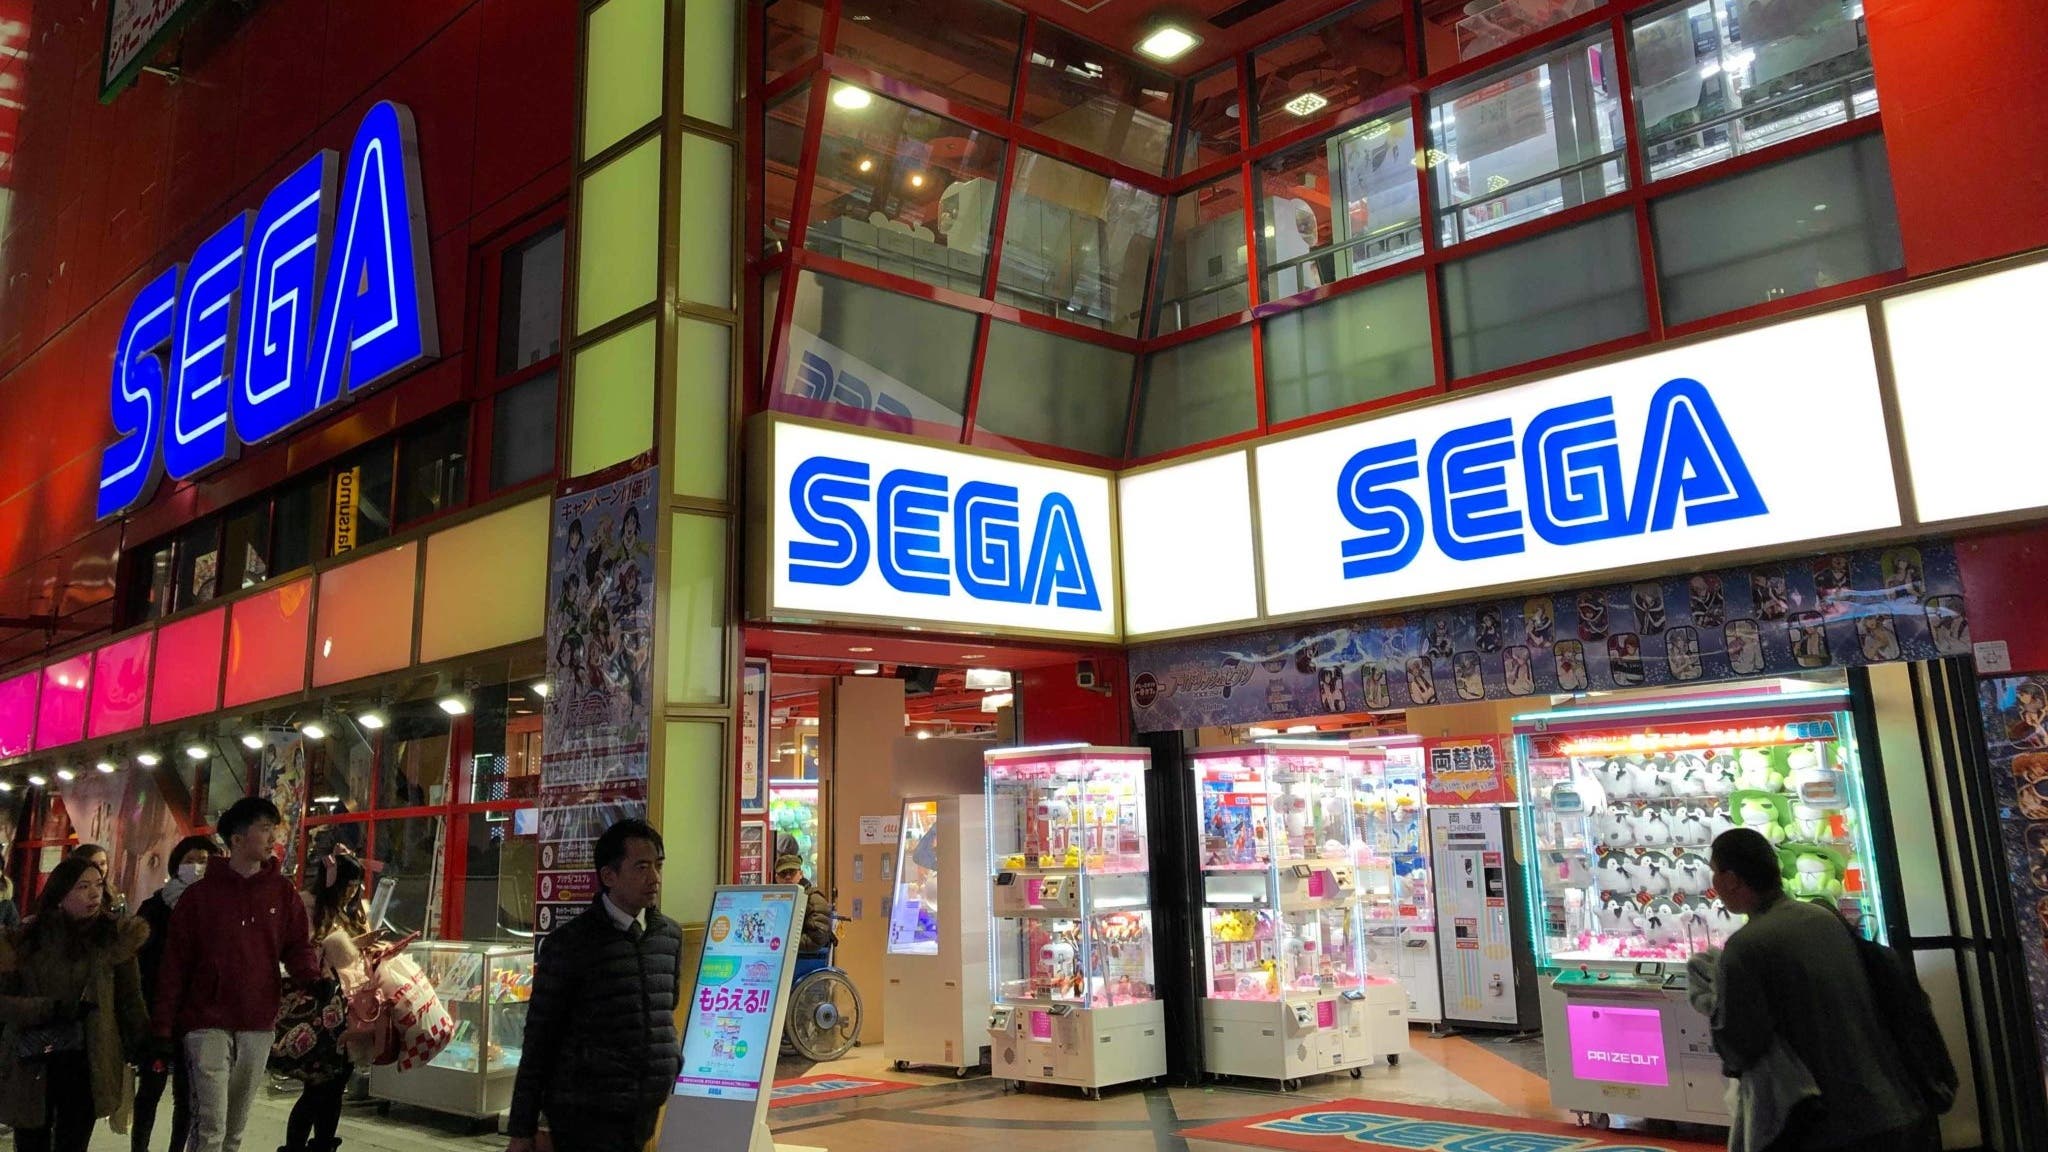 Sega confirma que sus centros de máquinas arcade mantendrán el mismo nombre a pesar de la compra de su mayoría de acciones por la empresa Genda